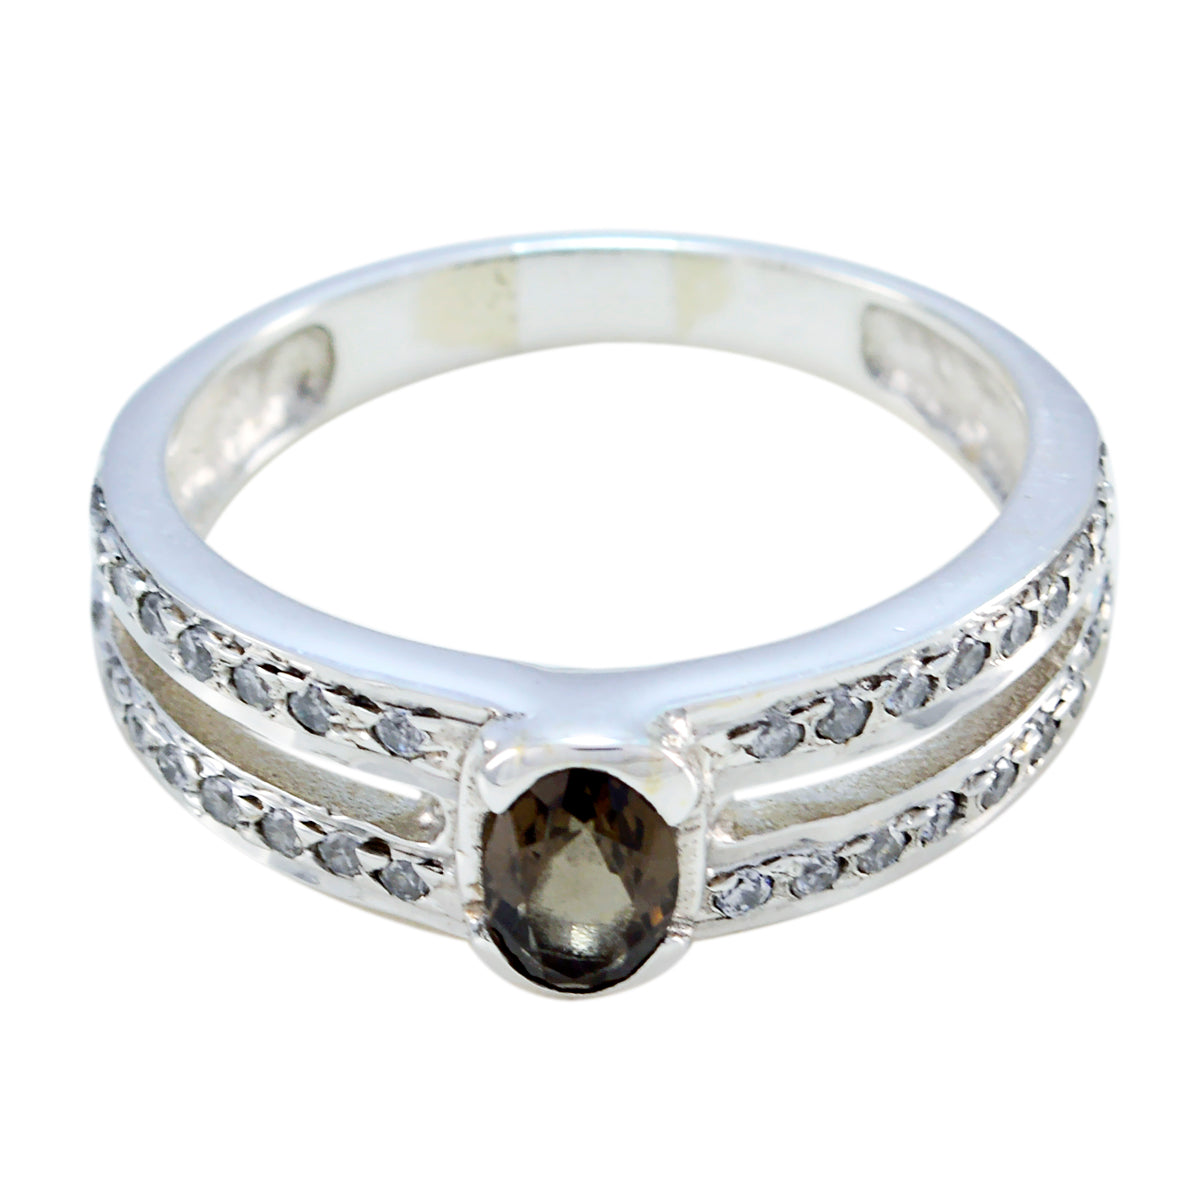 Riyo venta al por mayor de piedras preciosas de cuarzo ahumado anillo de plata 925 joyería de la suerte